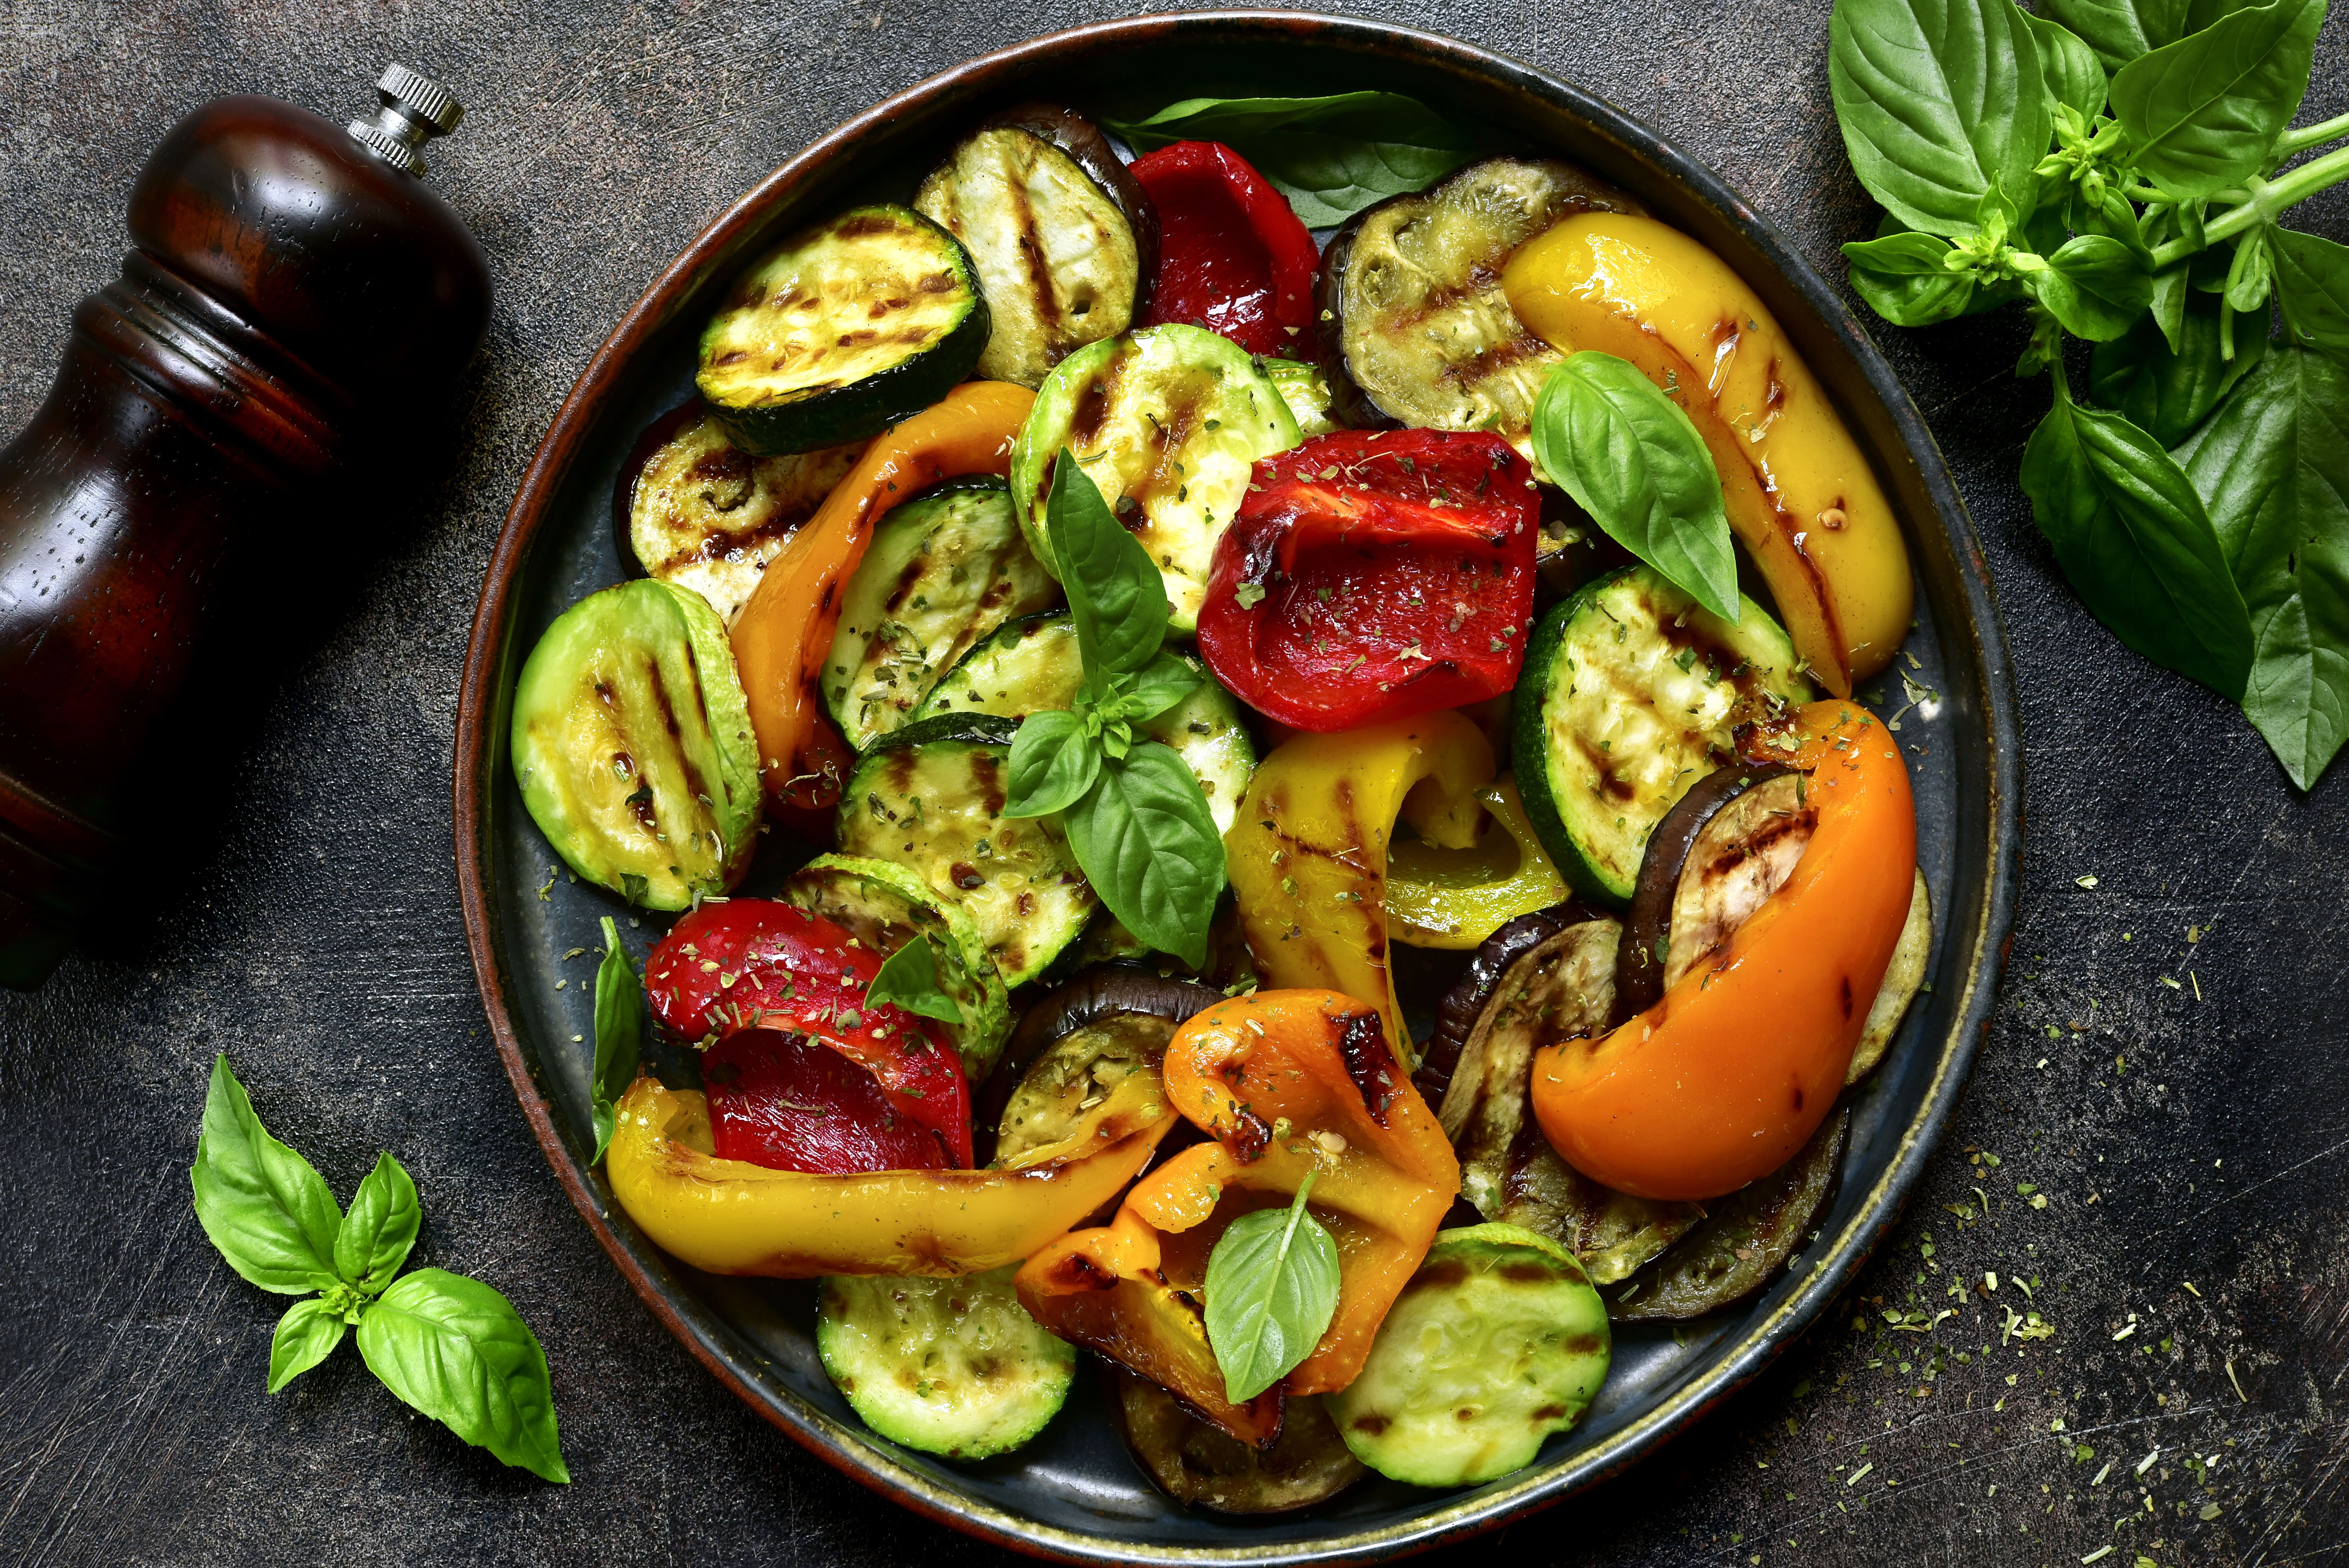 Verdure alla griglia: le più adatte e i trucchi per renderle gustose